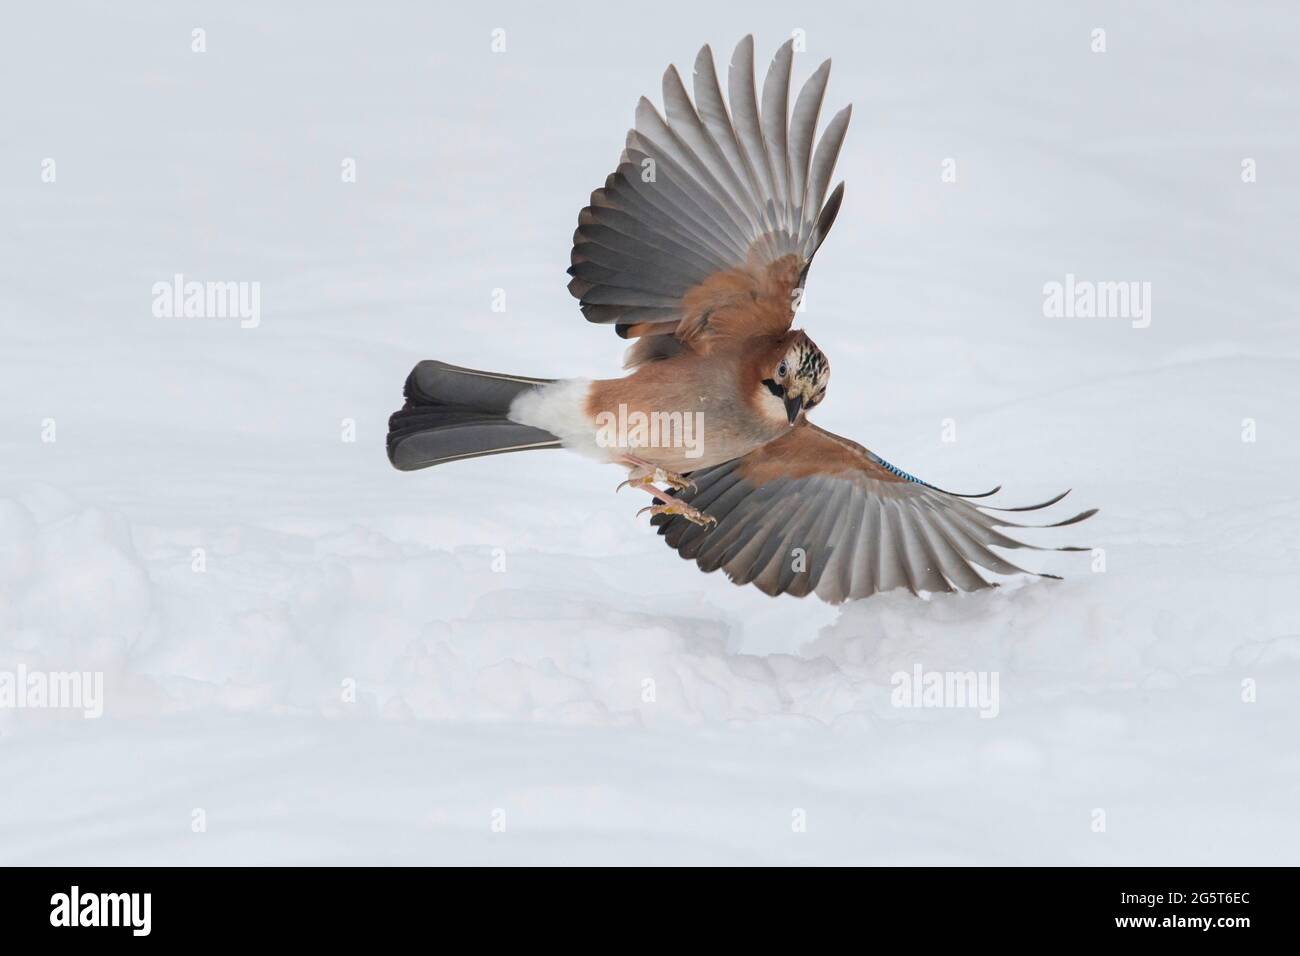 jay (Garrulus glandarius), atterrissage sur la neige, Allemagne, Basse-Saxe Banque D'Images